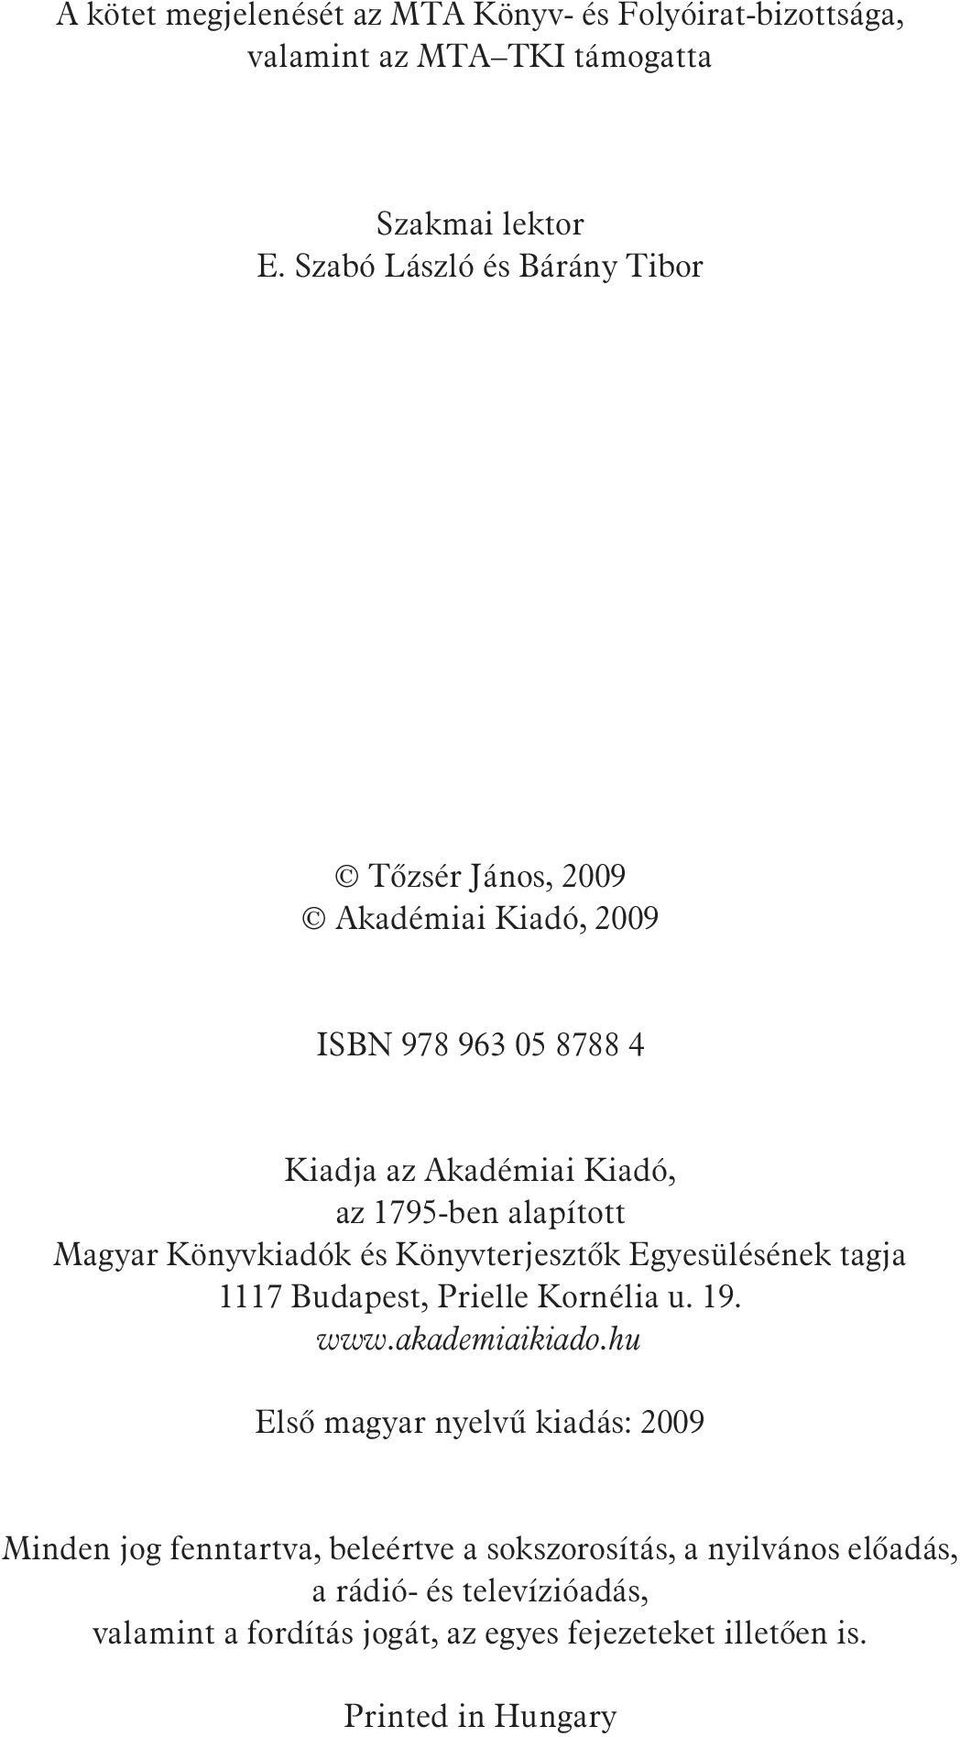 Magyar Könyvkiadók és Könyvterjesztõk Egyesülésének tagja 1117 Budapest, Prielle Kornélia u. 19. www.akademiaikiado.